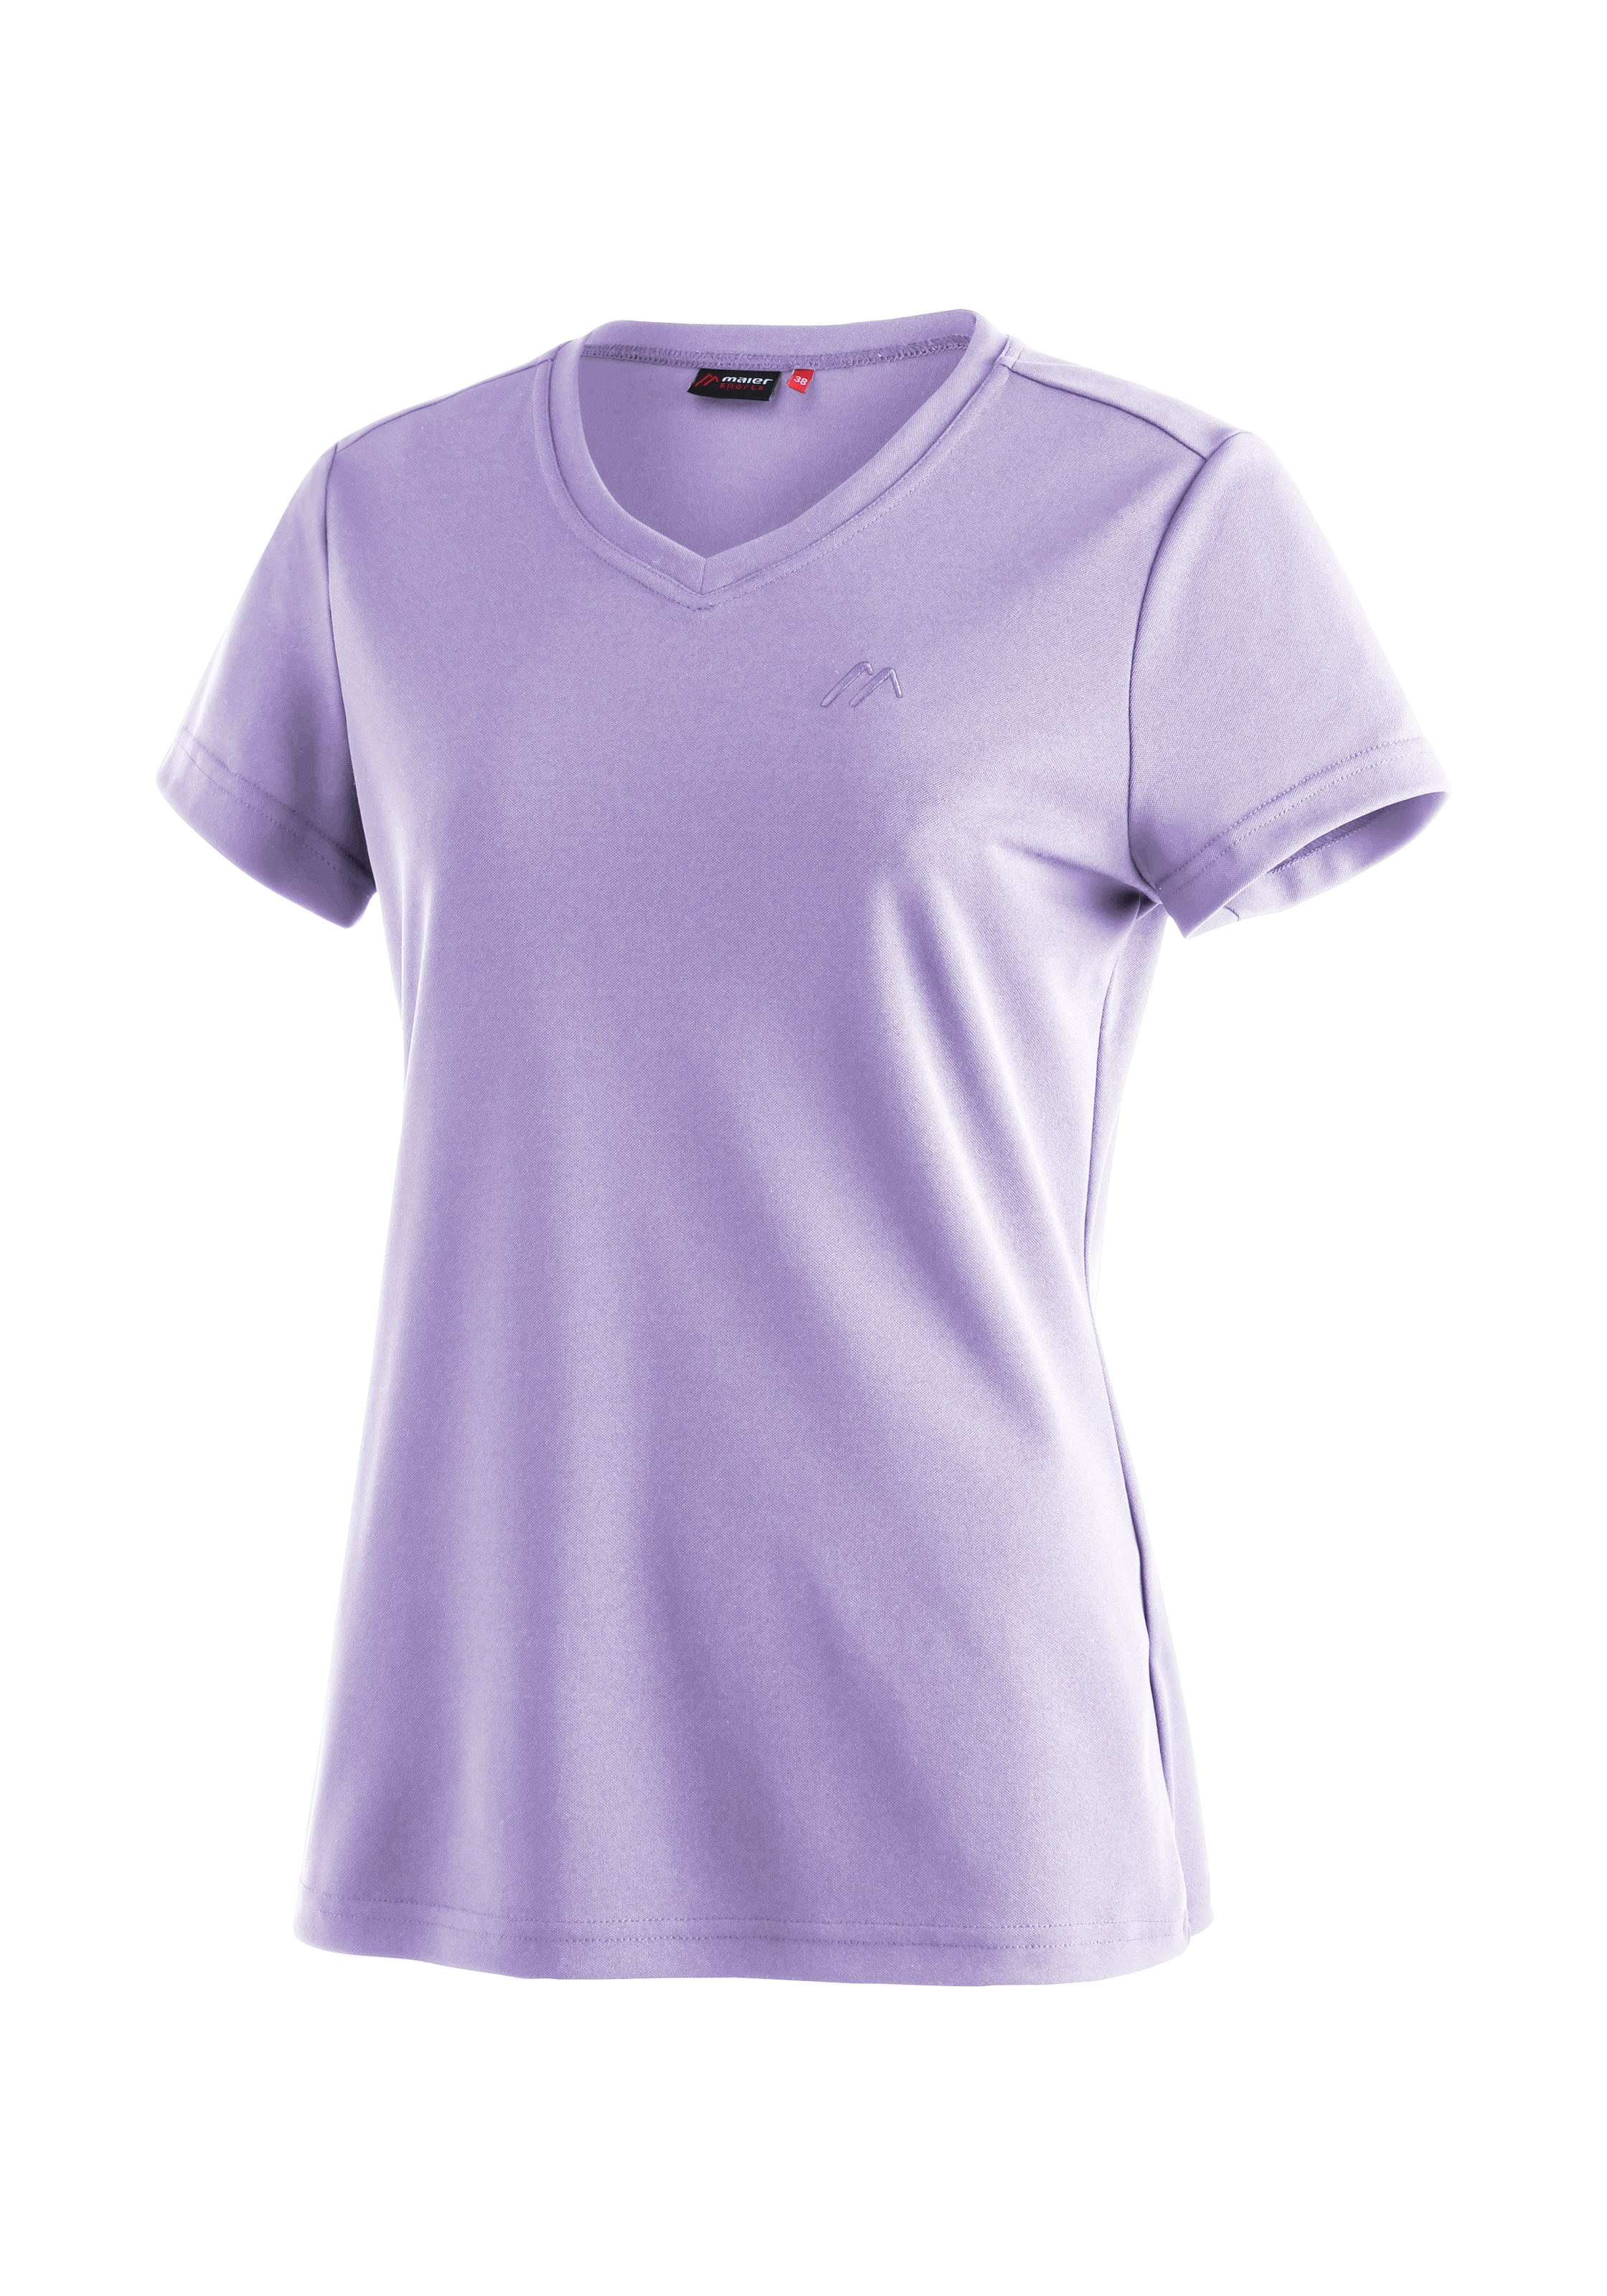 »Trudy«, für Funktionsshirt und Freizeit Wandern Maier bei T-Shirt, Kurzarmshirt Damen Sports